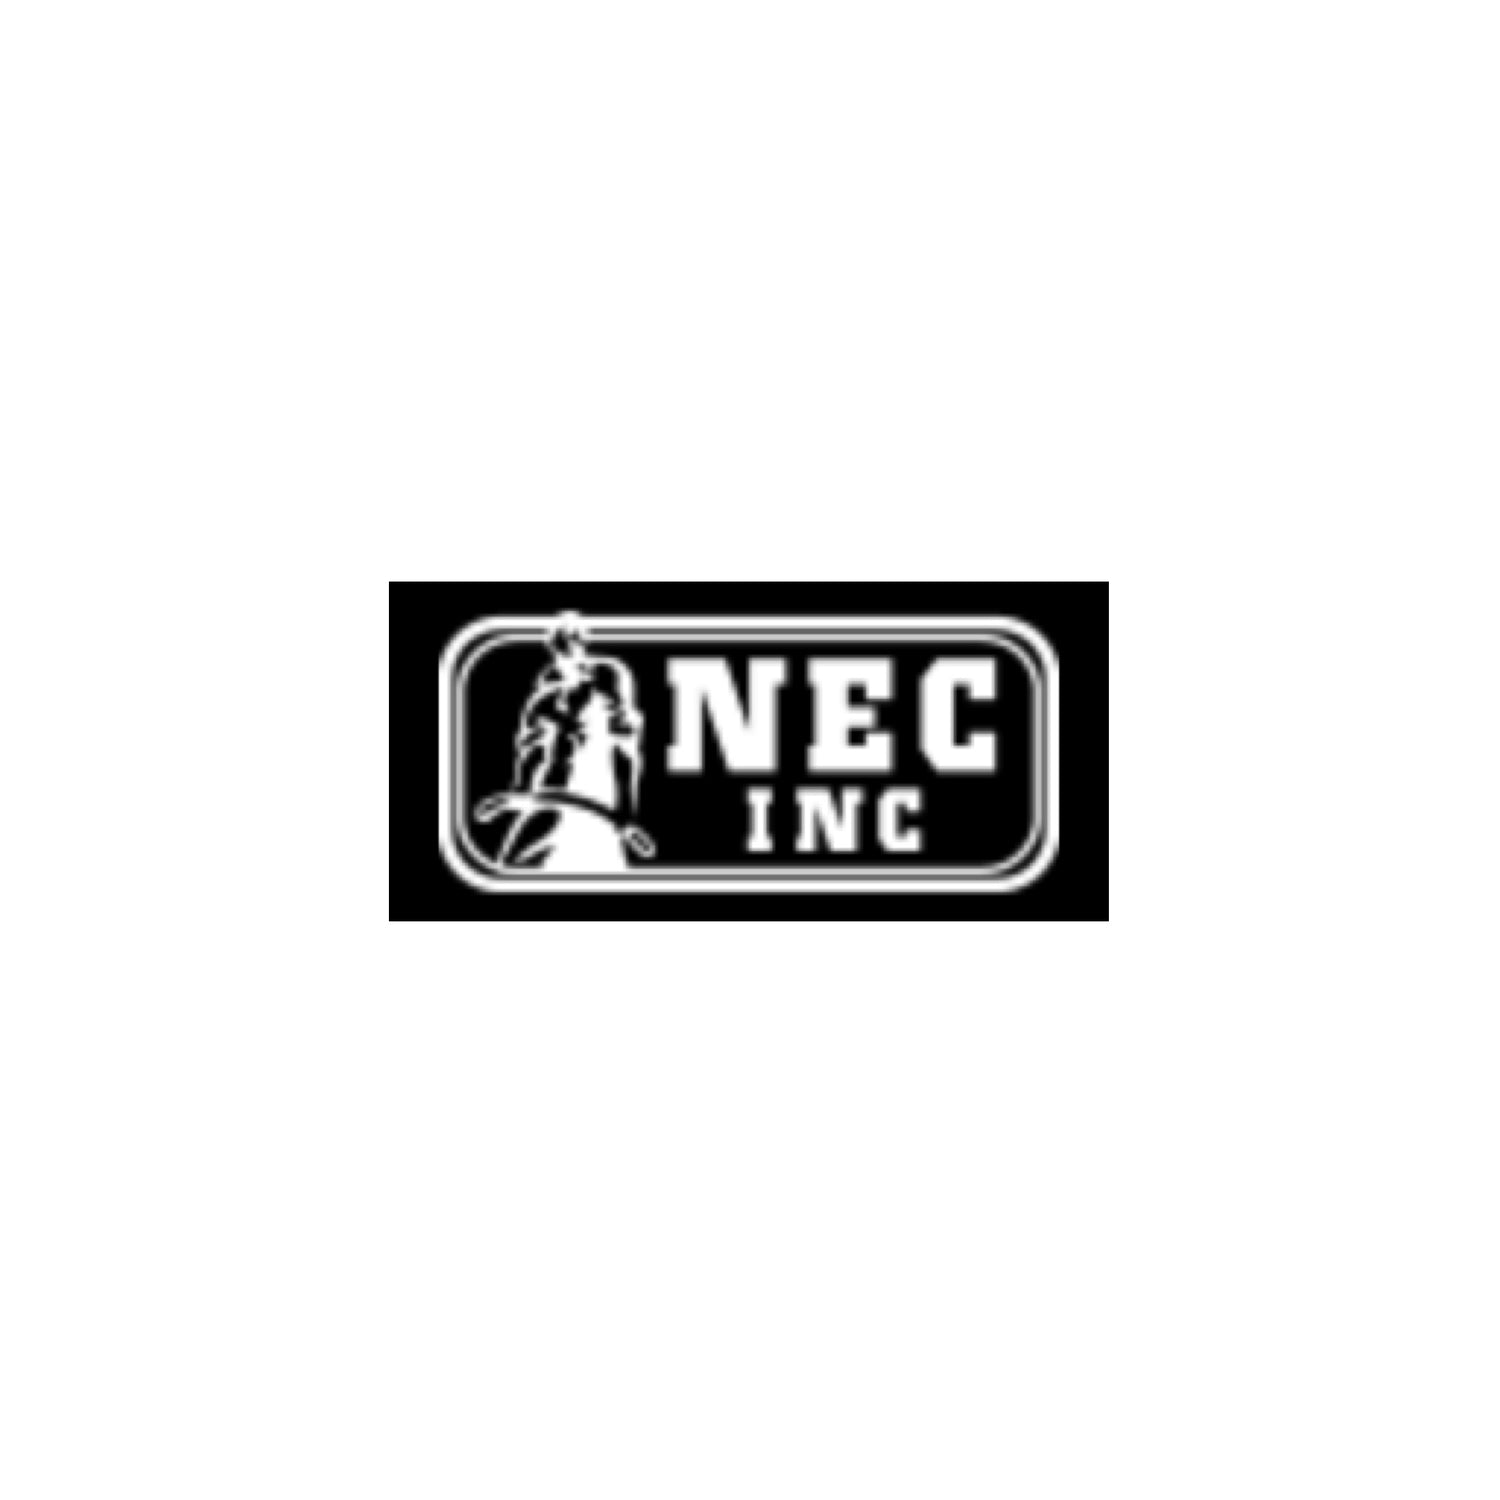 NEC INC.